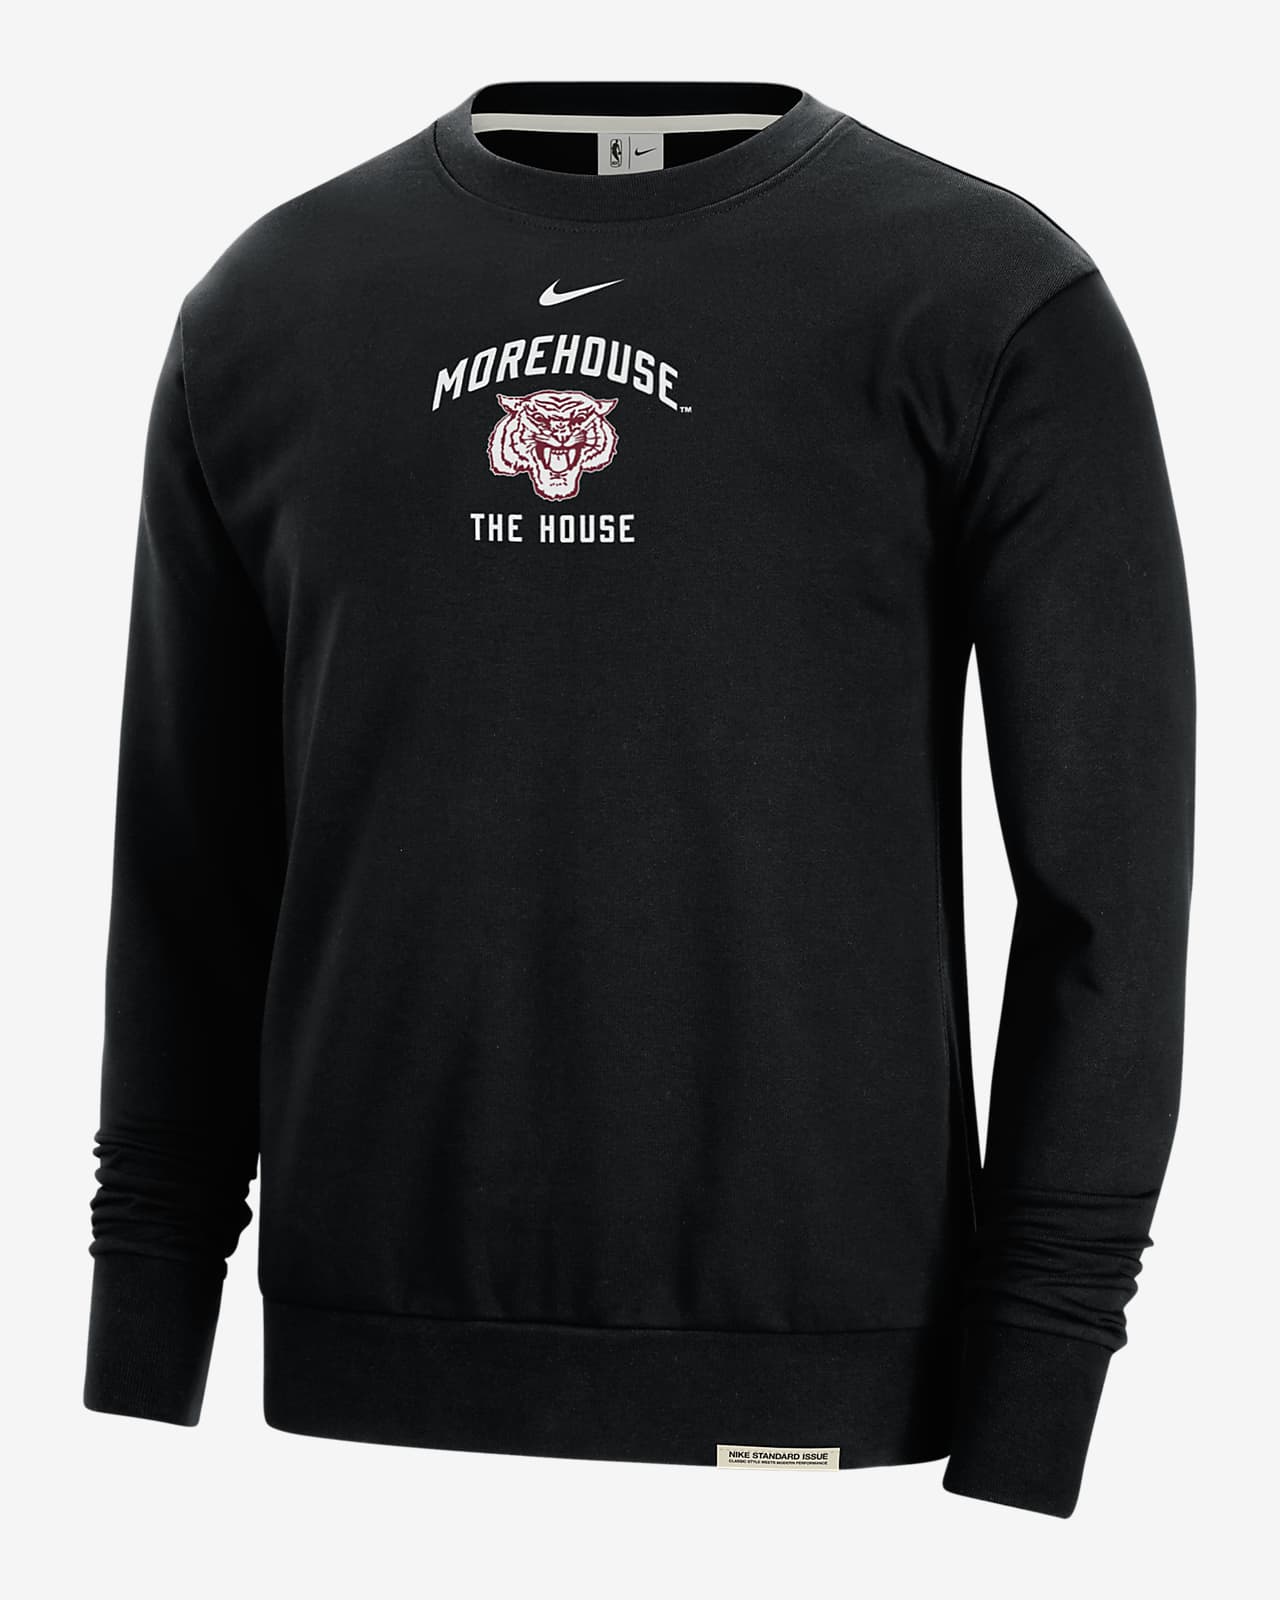 Morehouse Standard Issue Men's Nike College Fleece Crew-Neck Sweatshirt